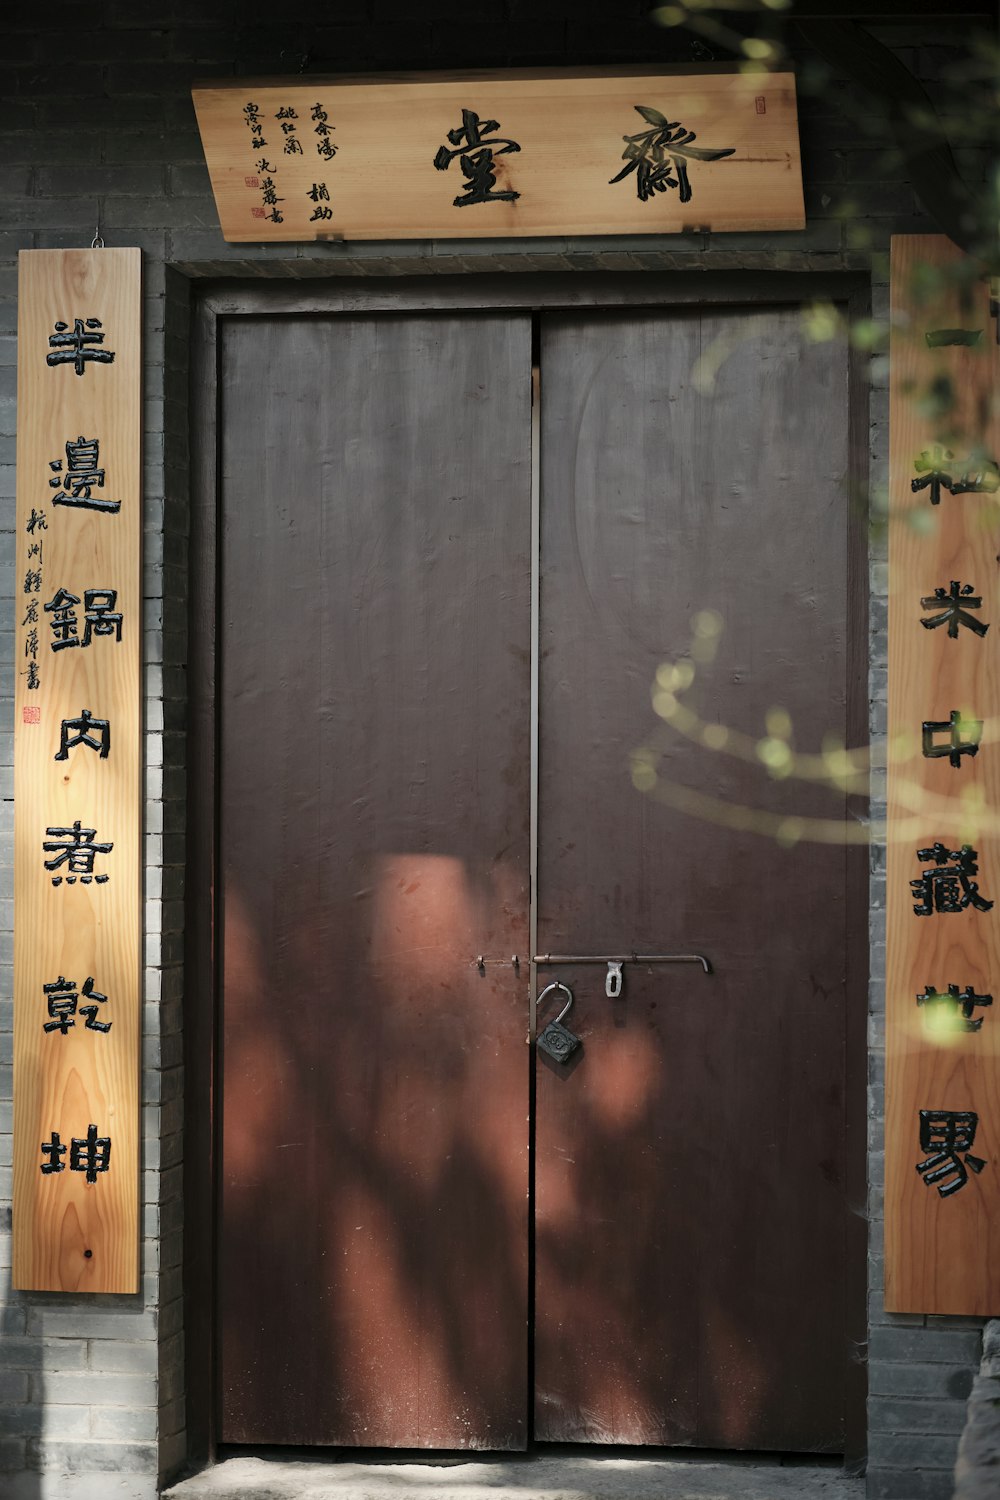 Eine Holztür mit asiatischer Schrift darauf